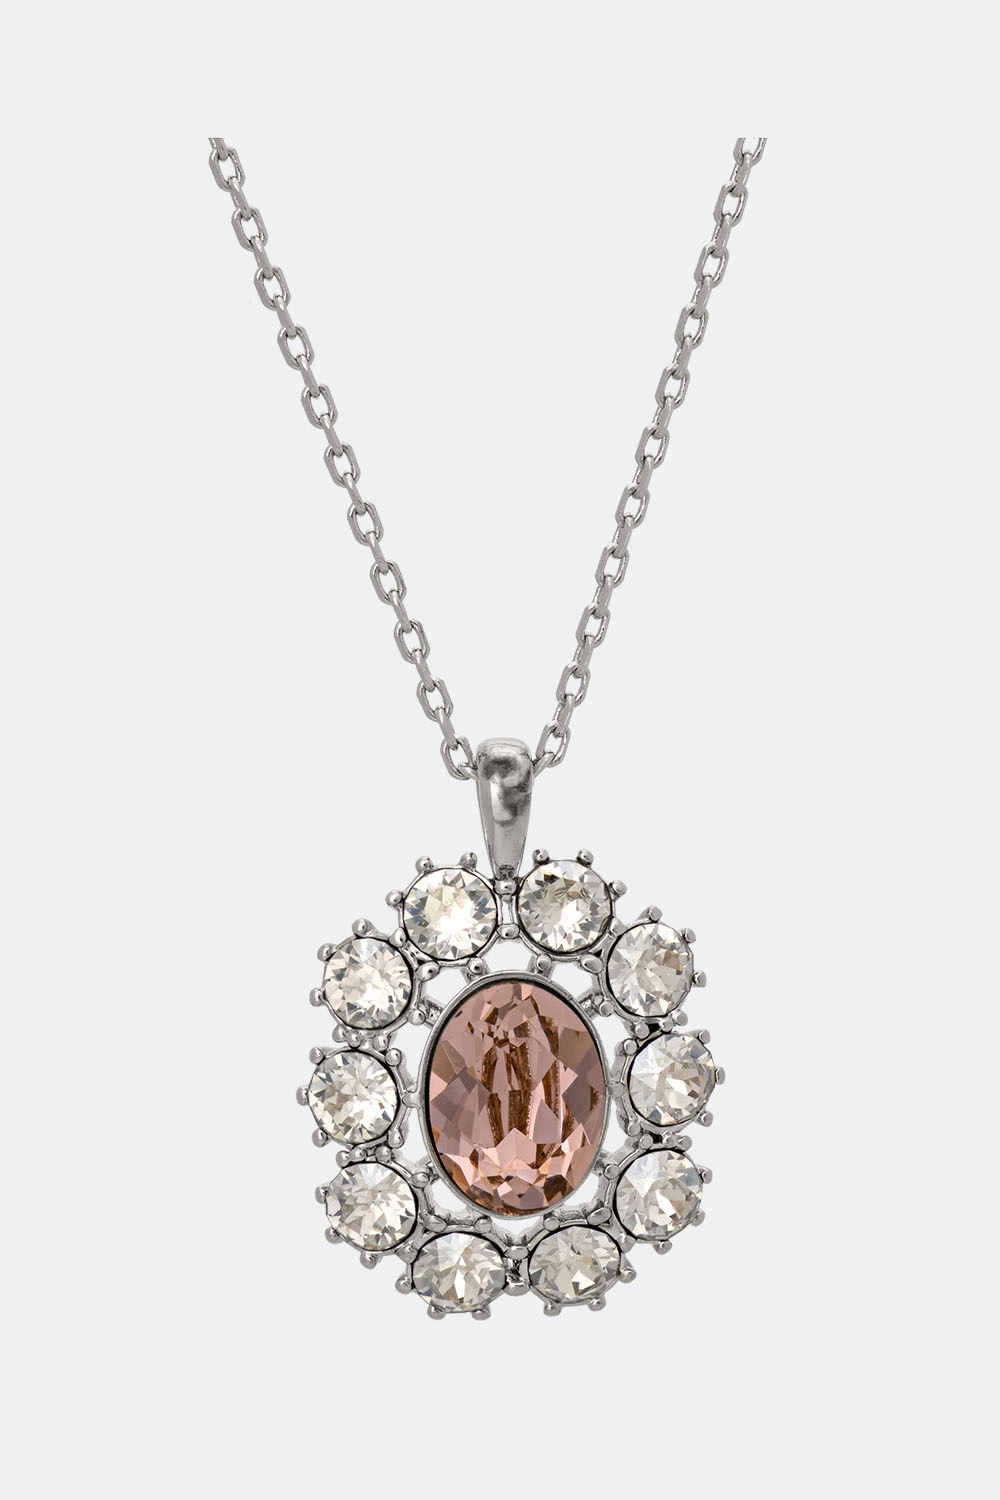 Miss Elizabeth necklace - Vintage rose